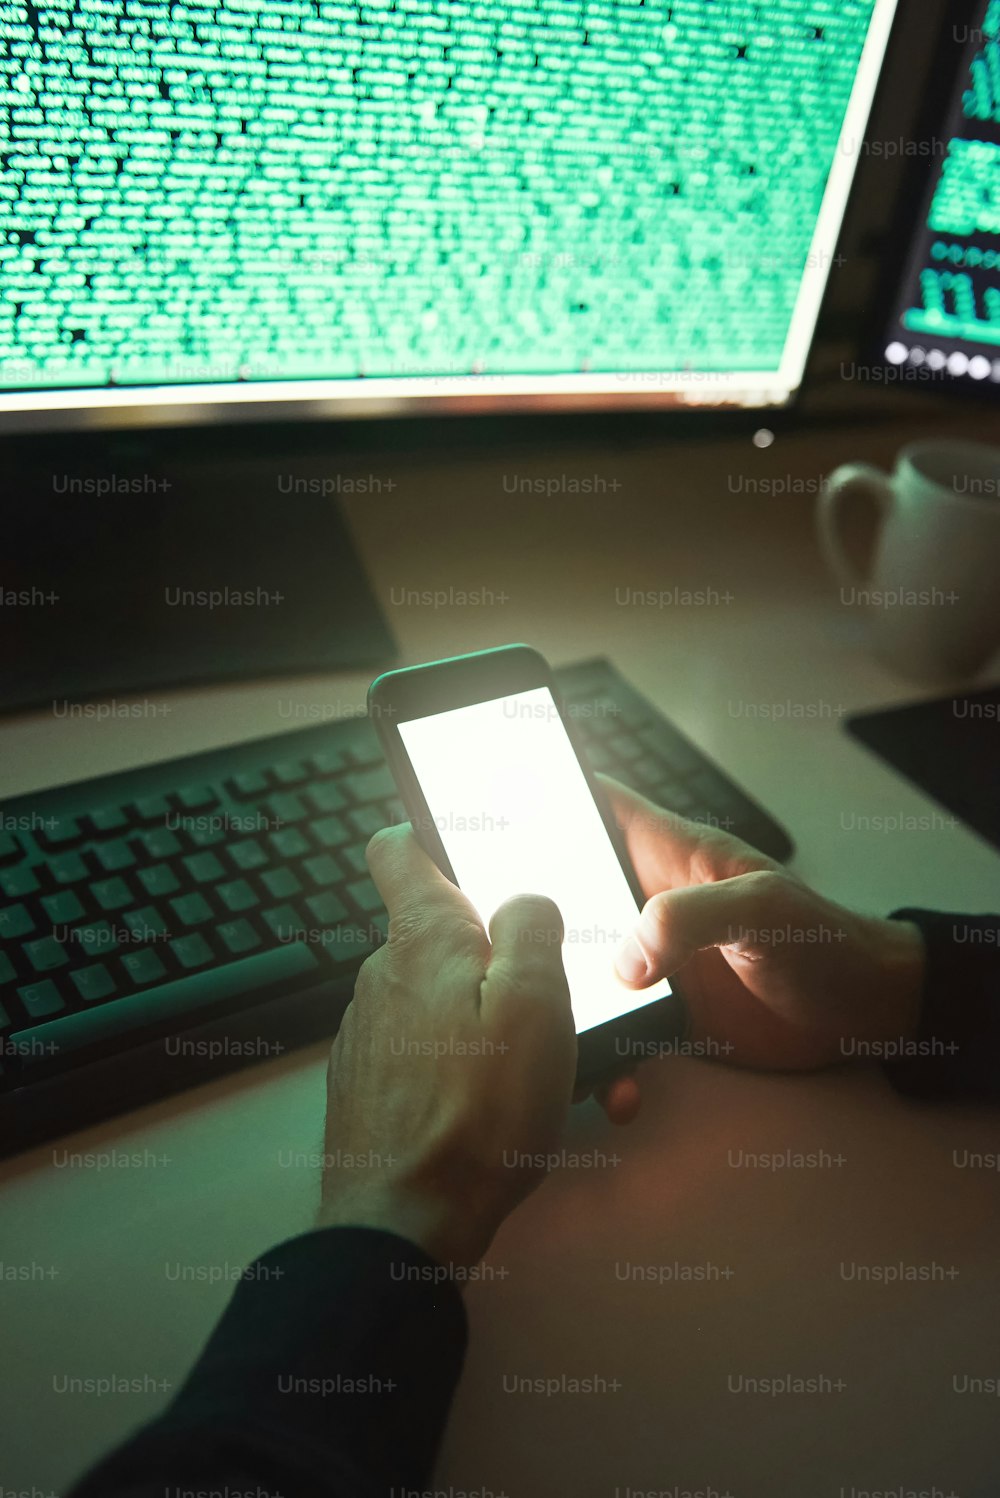 Professioneller Hacker. Nahaufnahme eines jungen Hackers in schwarzem Kapuzenpulli, der sein Smartphone benutzt, um Daten zu stehlen, während er in einem dunklen Raum sitzt. Binärcode. Cyberangriff. Cybersicherheit